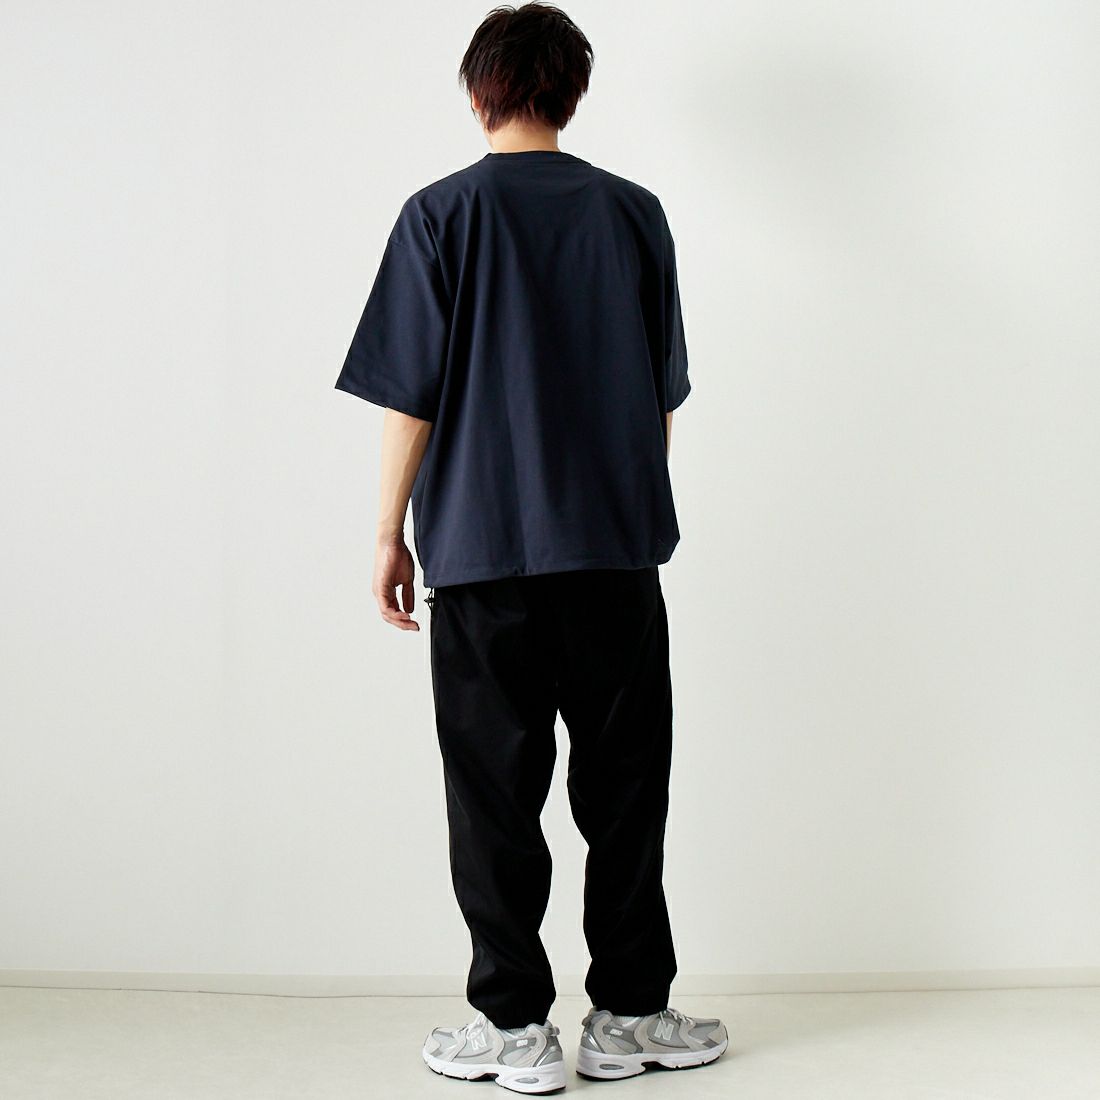 Jeans Factory Clothes [ジーンズファクトリークローズ] ドットエアリードローコードTシャツ [JFC-242-016] BLACK &&モデル身長：182cm 着用サイズ：L&&